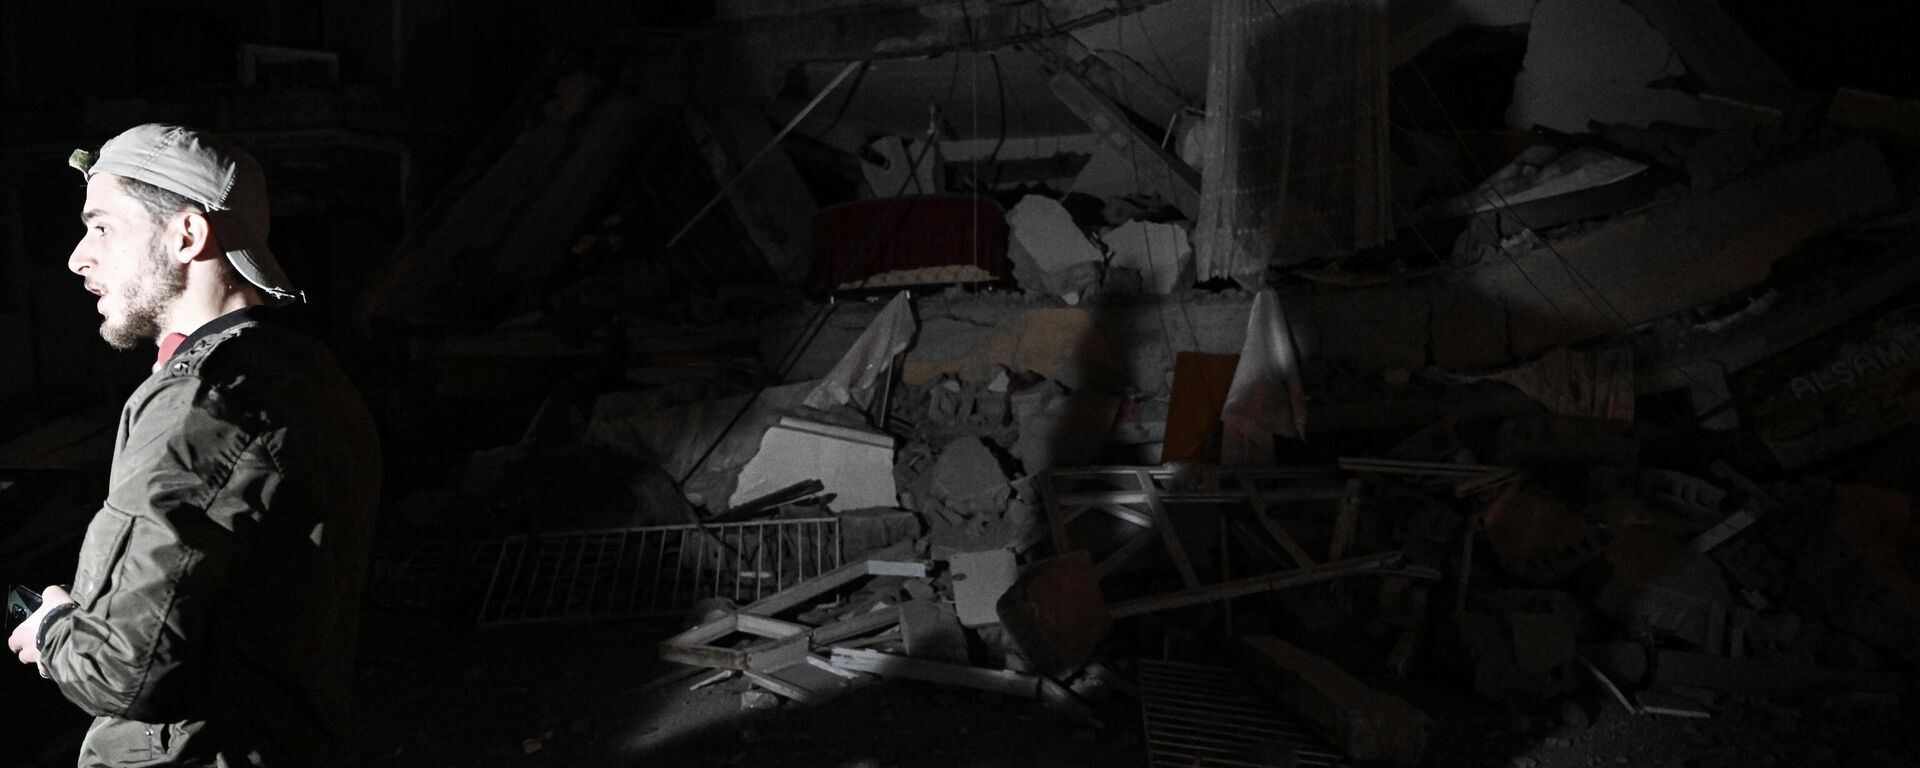 Hatay'ın Defne ilçesinde 6,4, Samandağ ilçesinde 5,8 büyüklüğünde iki deprem meydana geldi. Depremlerin ardından Hatay'ın İskenderun ilçesinde hasarlı bazı binaların yıkıldığı görüldü.  - Sputnik Türkiye, 1920, 20.02.2023